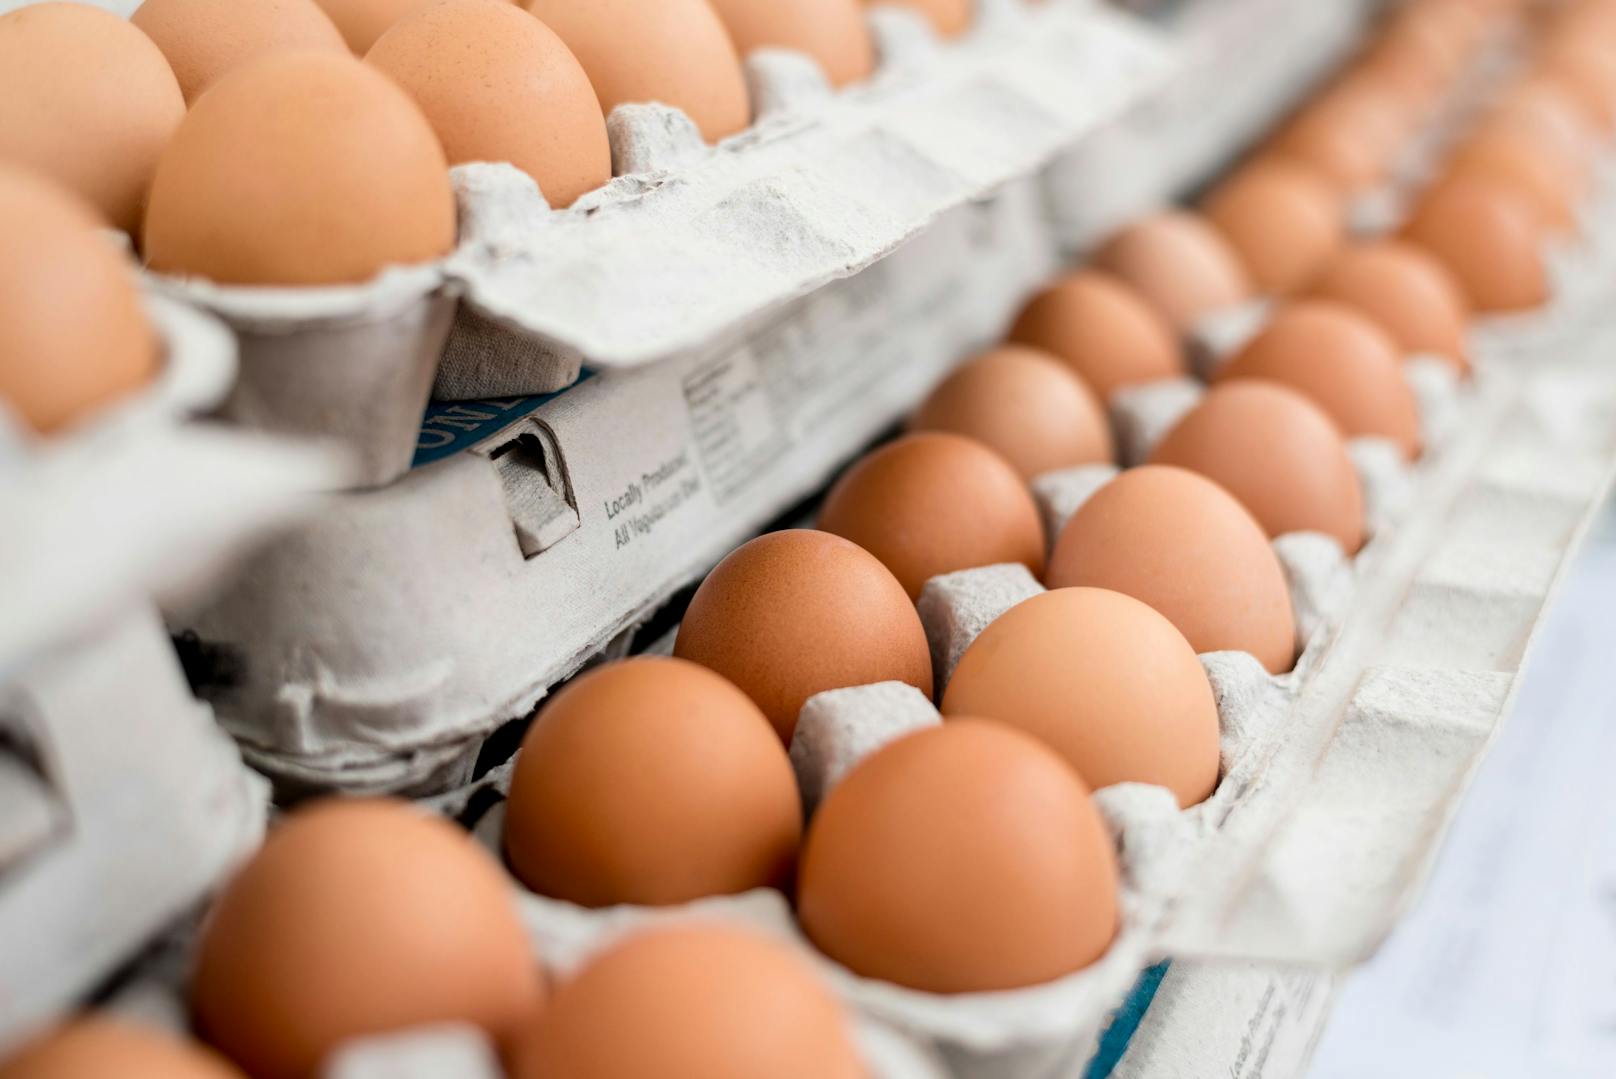 Na Mahlzeit! Diebe stahlen 93 (!) Eier aus Hofladen